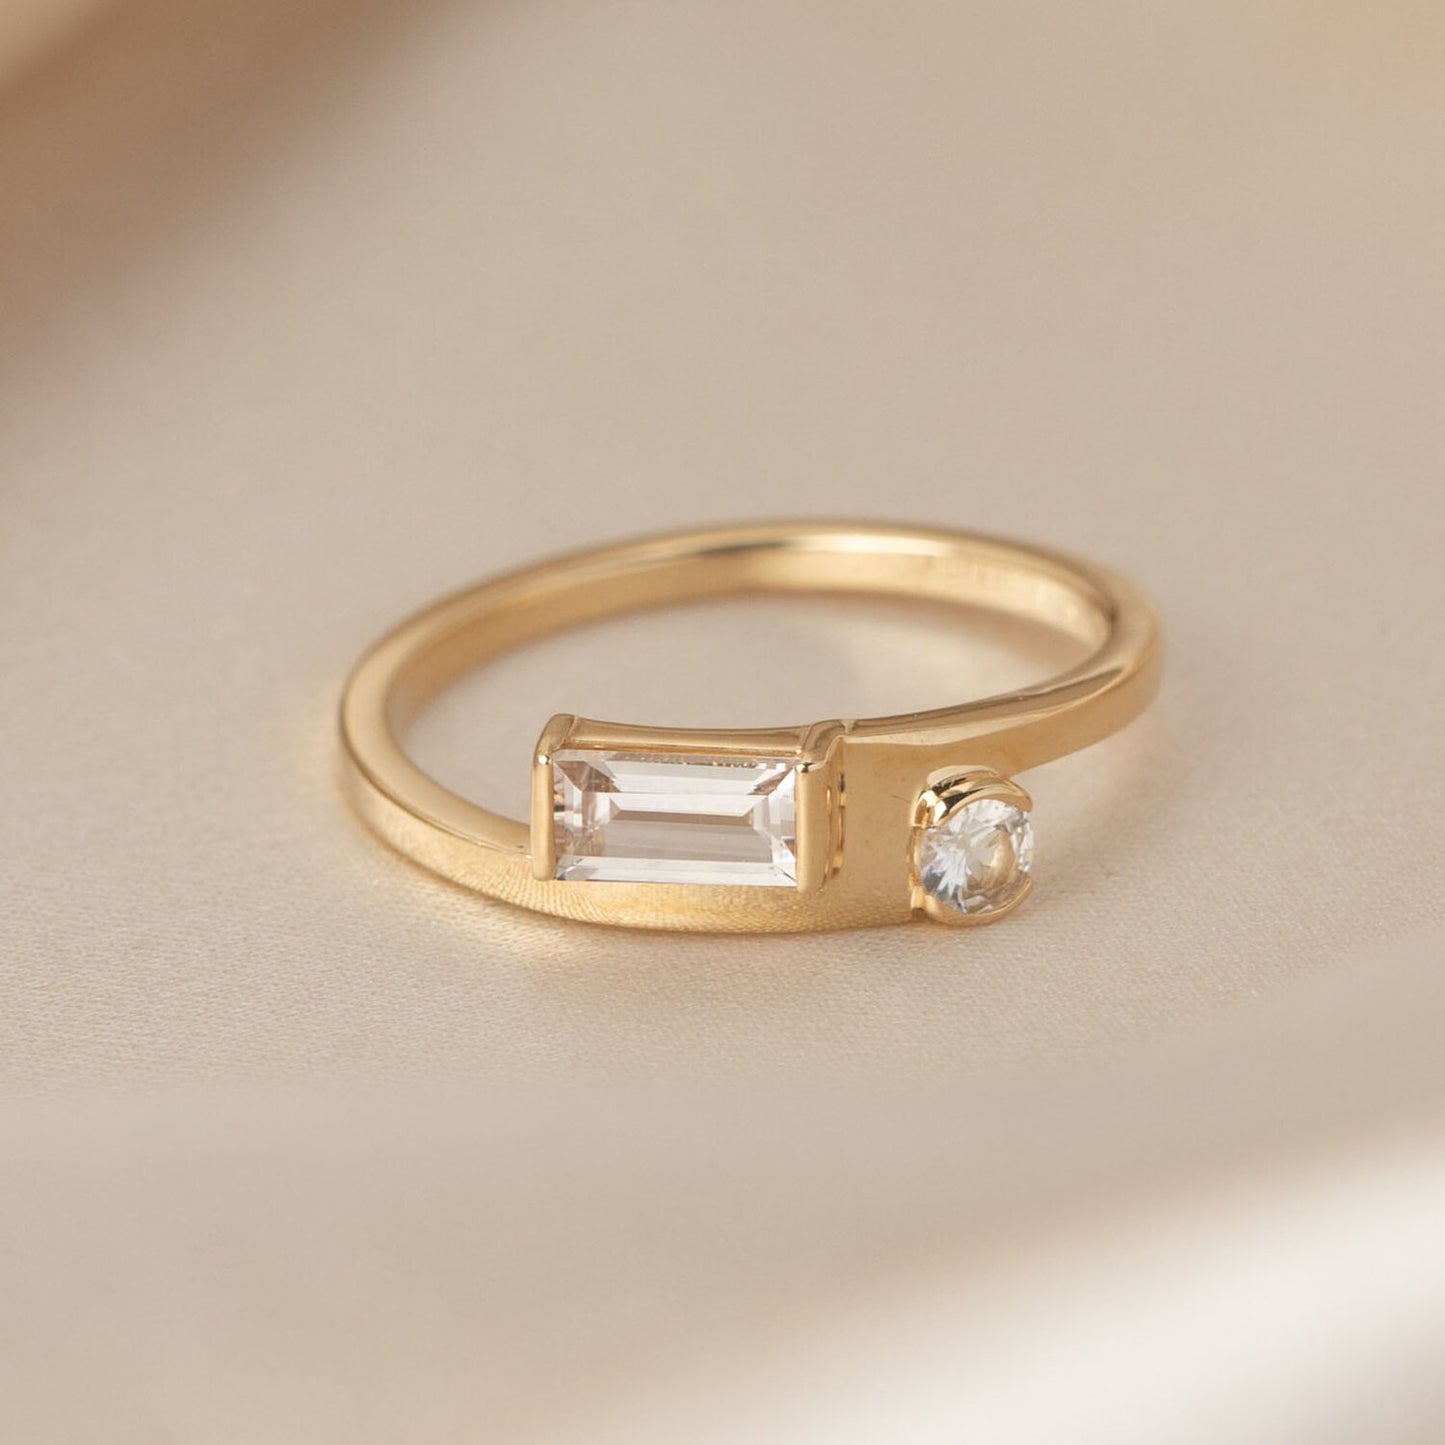 dylan ring - grown diamond - made to order